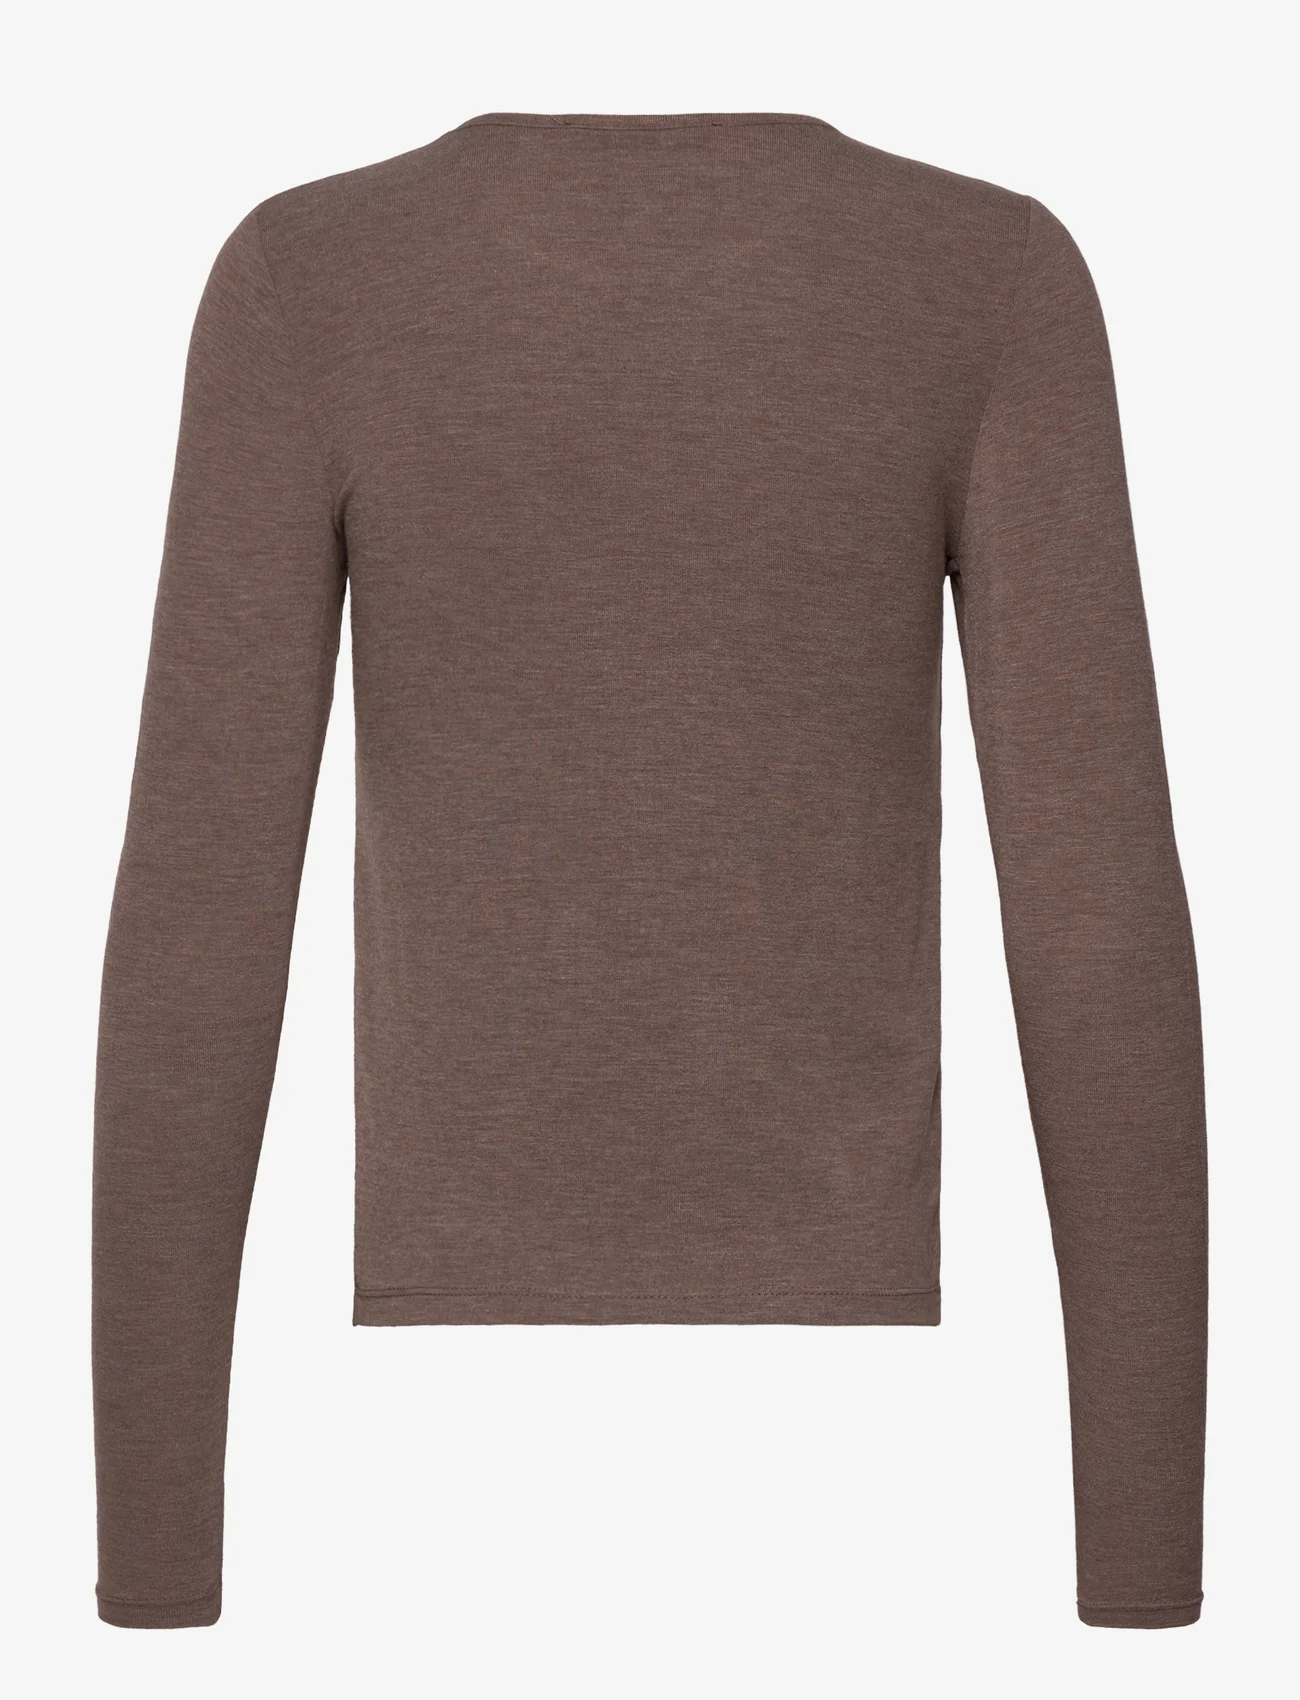 Mango - Round neck knit t-shirt - laveste priser - medium brown - 1